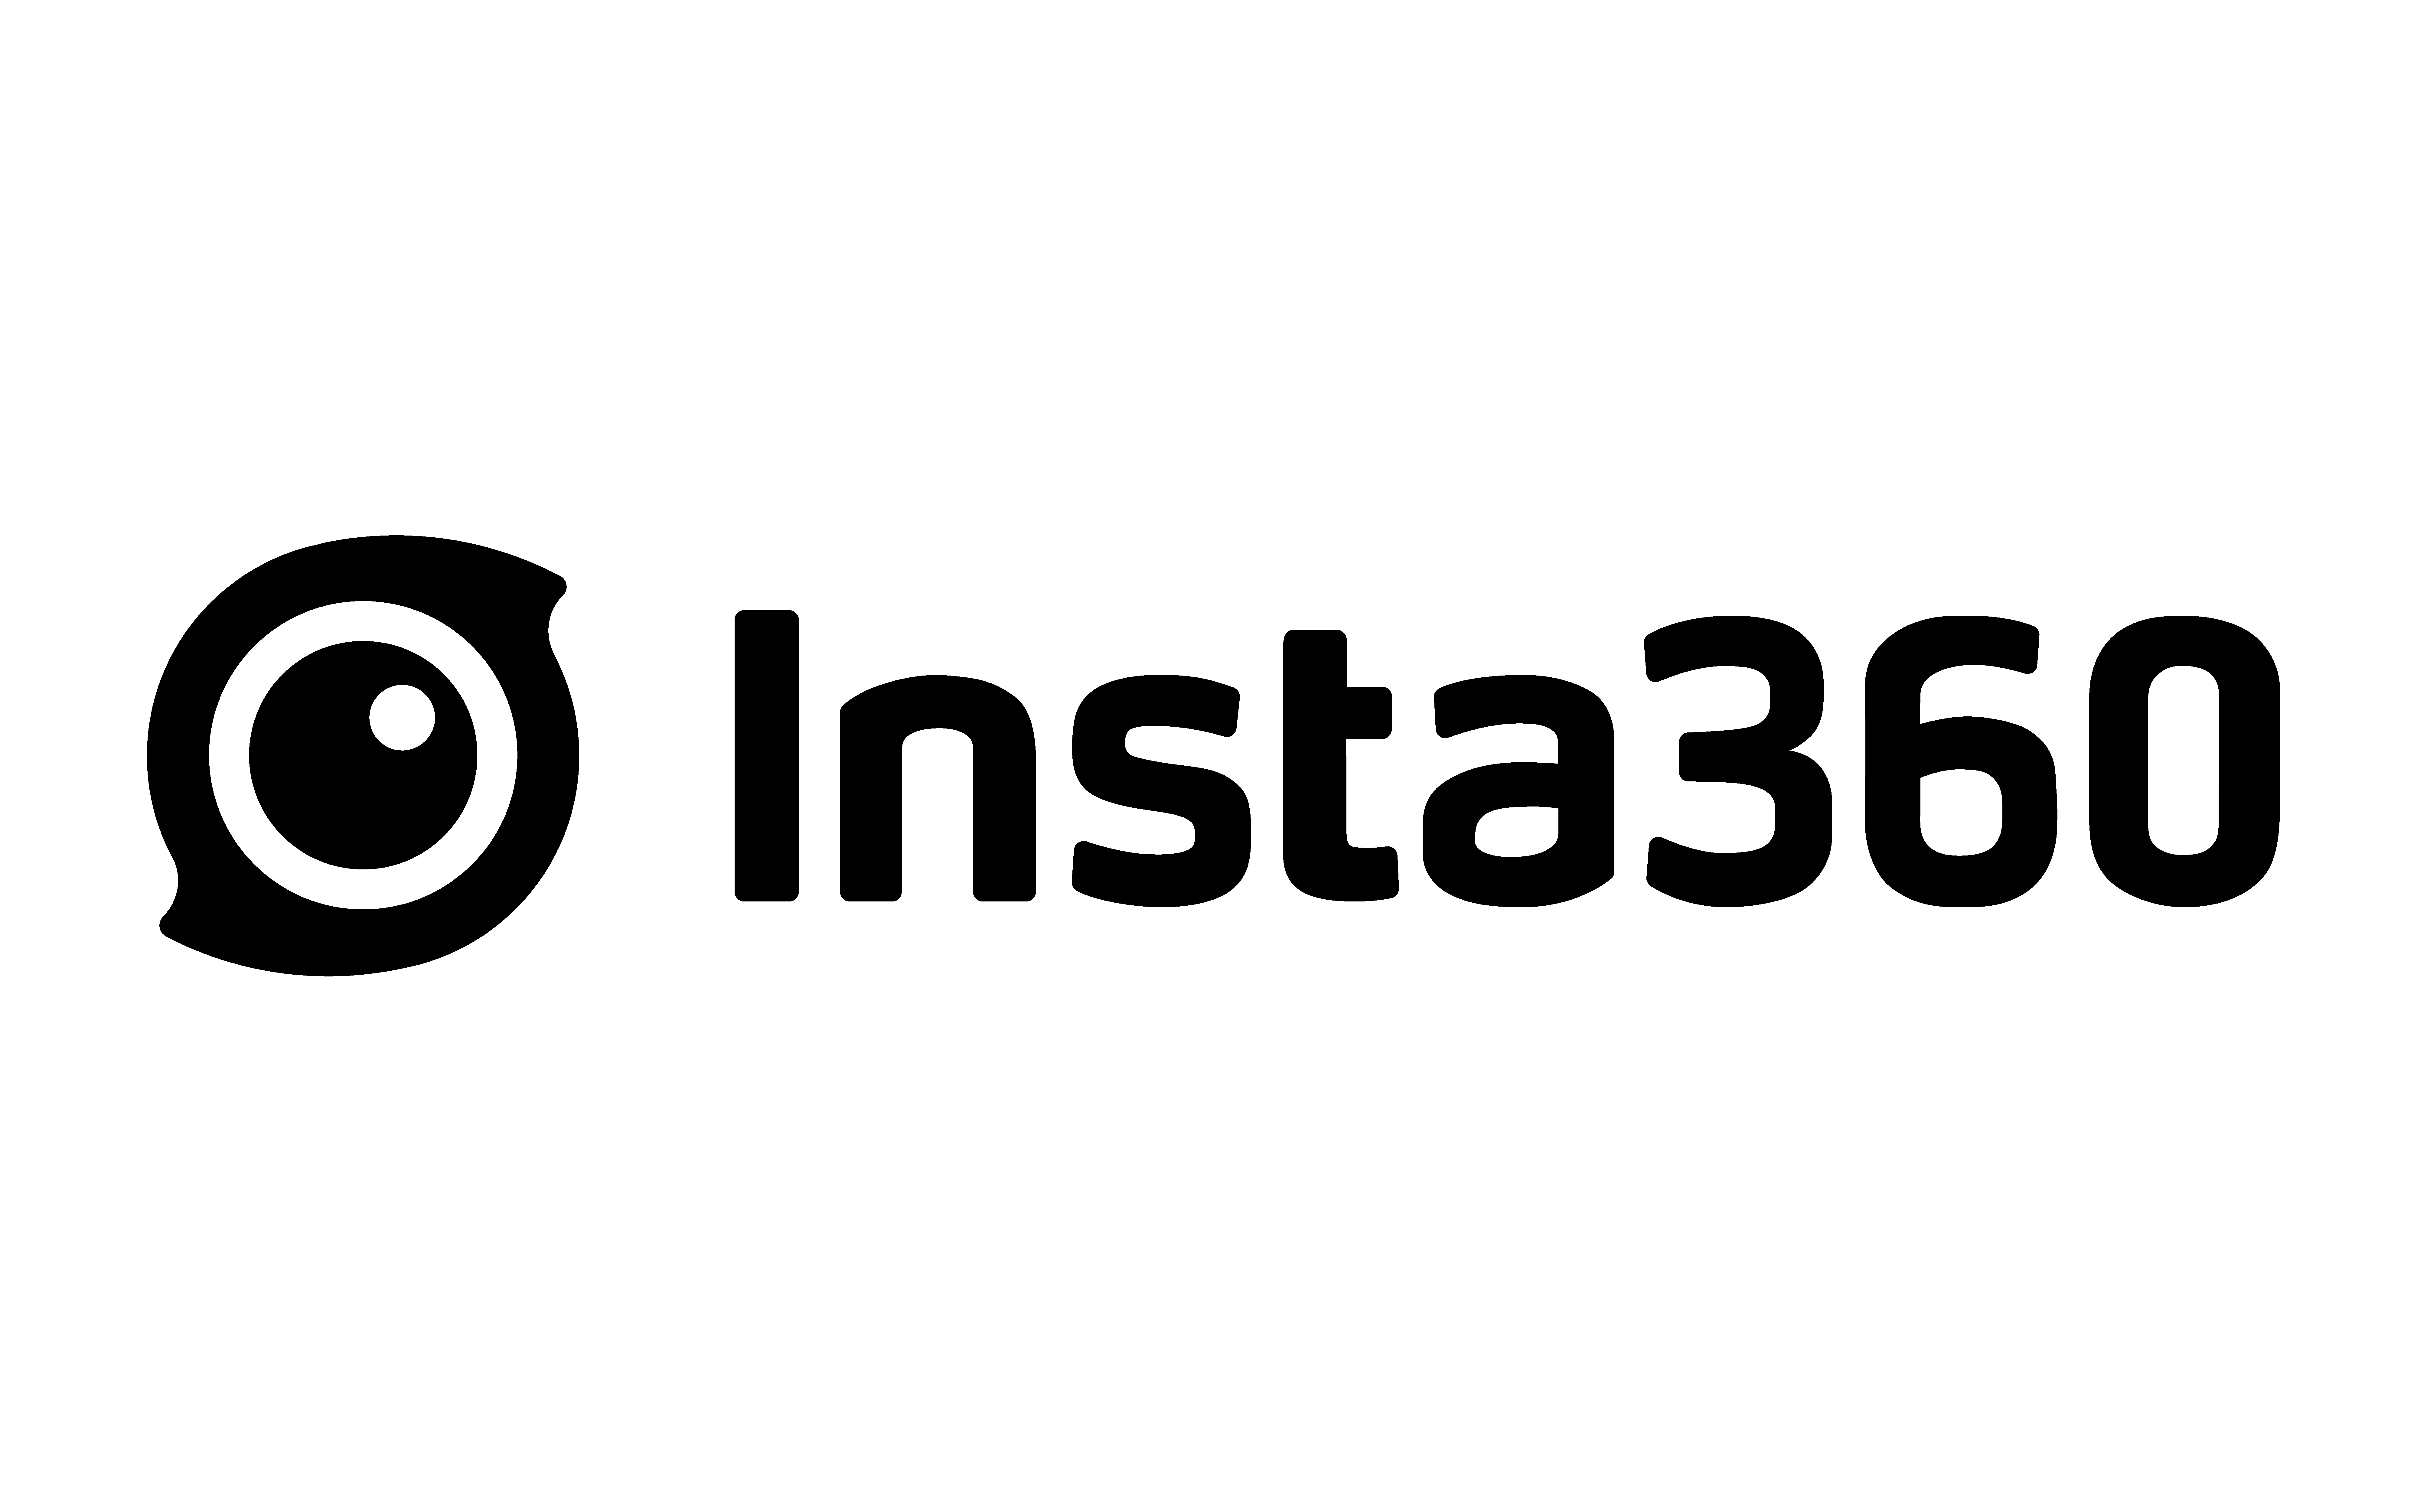 מצלמת אקסטרים Insta360 One RS 1-Inch 360